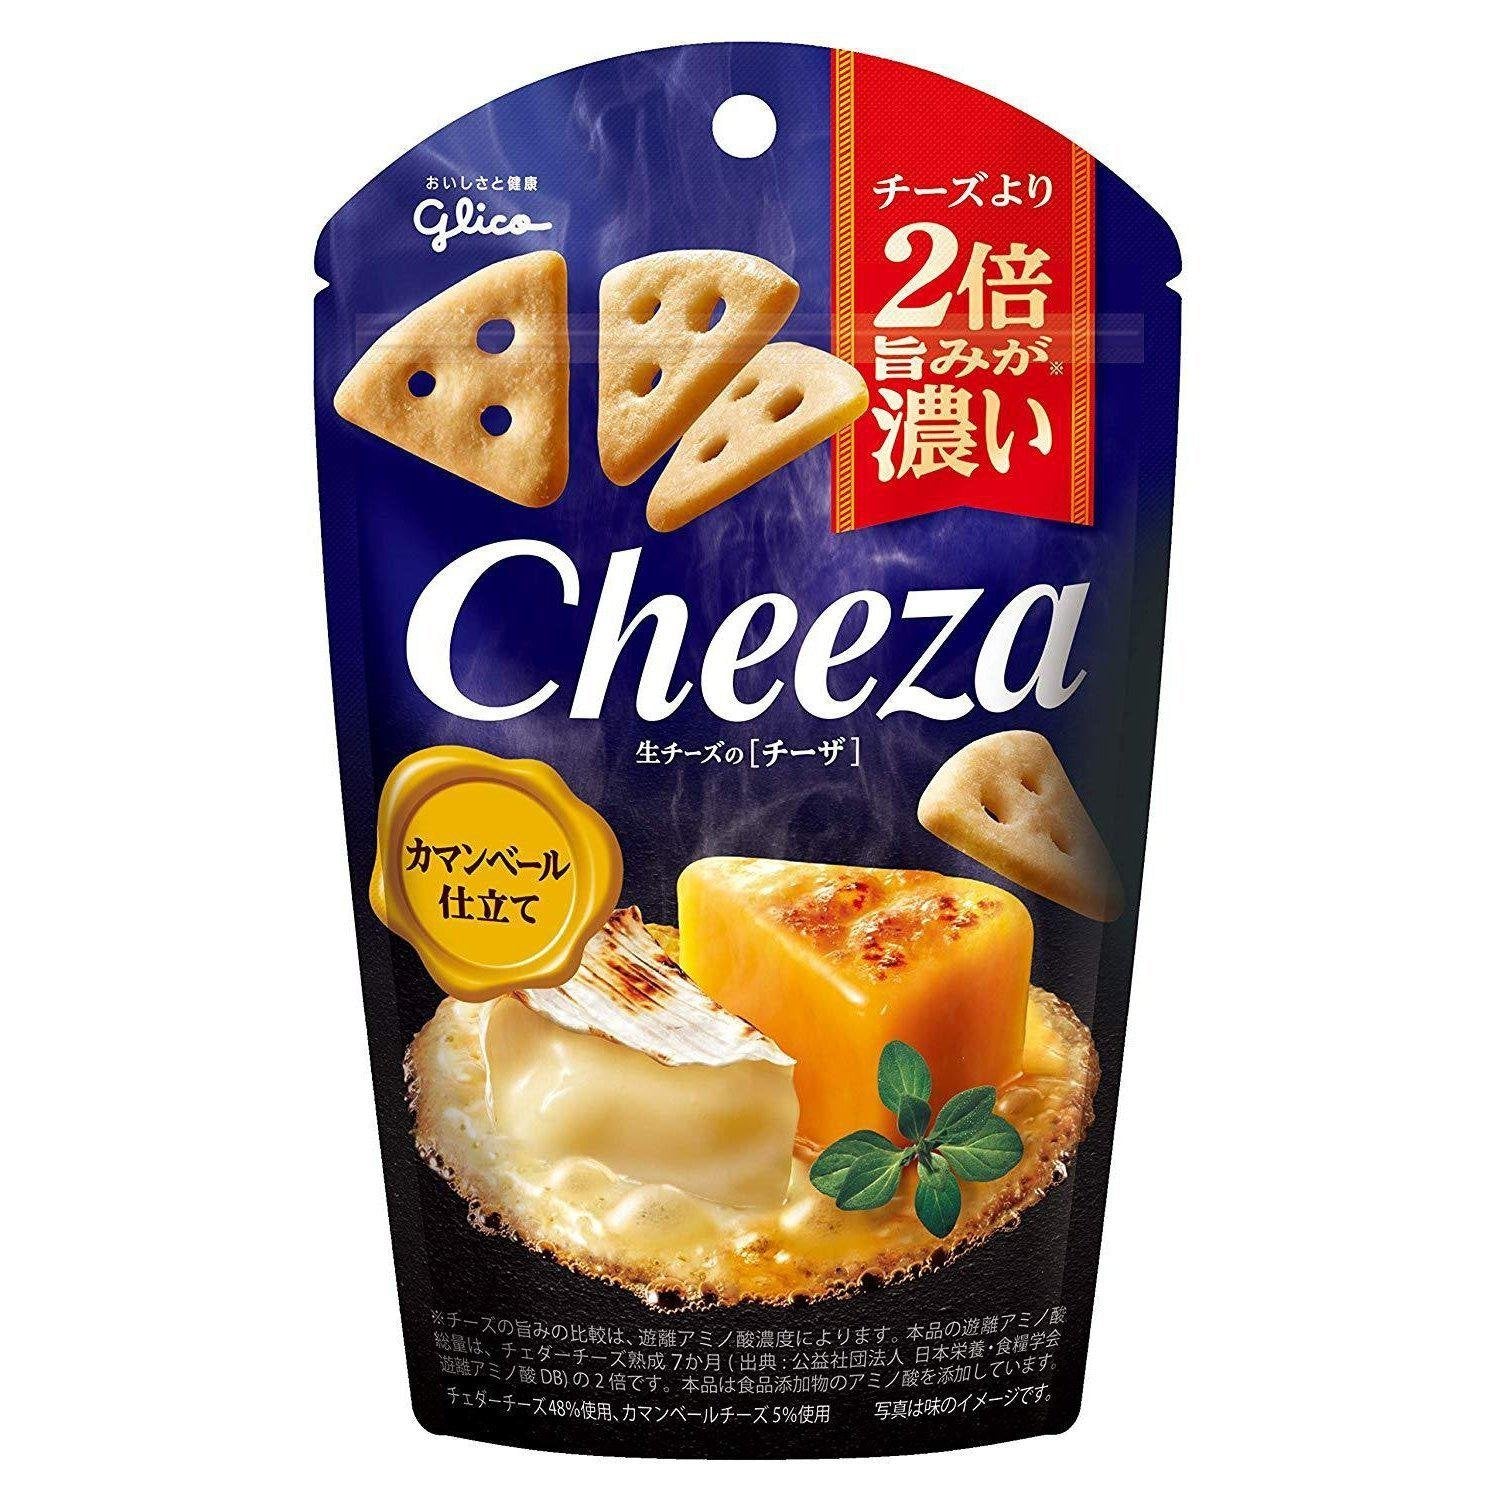 P-1-GLCO-CZACAM-1-Glico Cheeza Camembert Cheese Crackers 40g.jpg